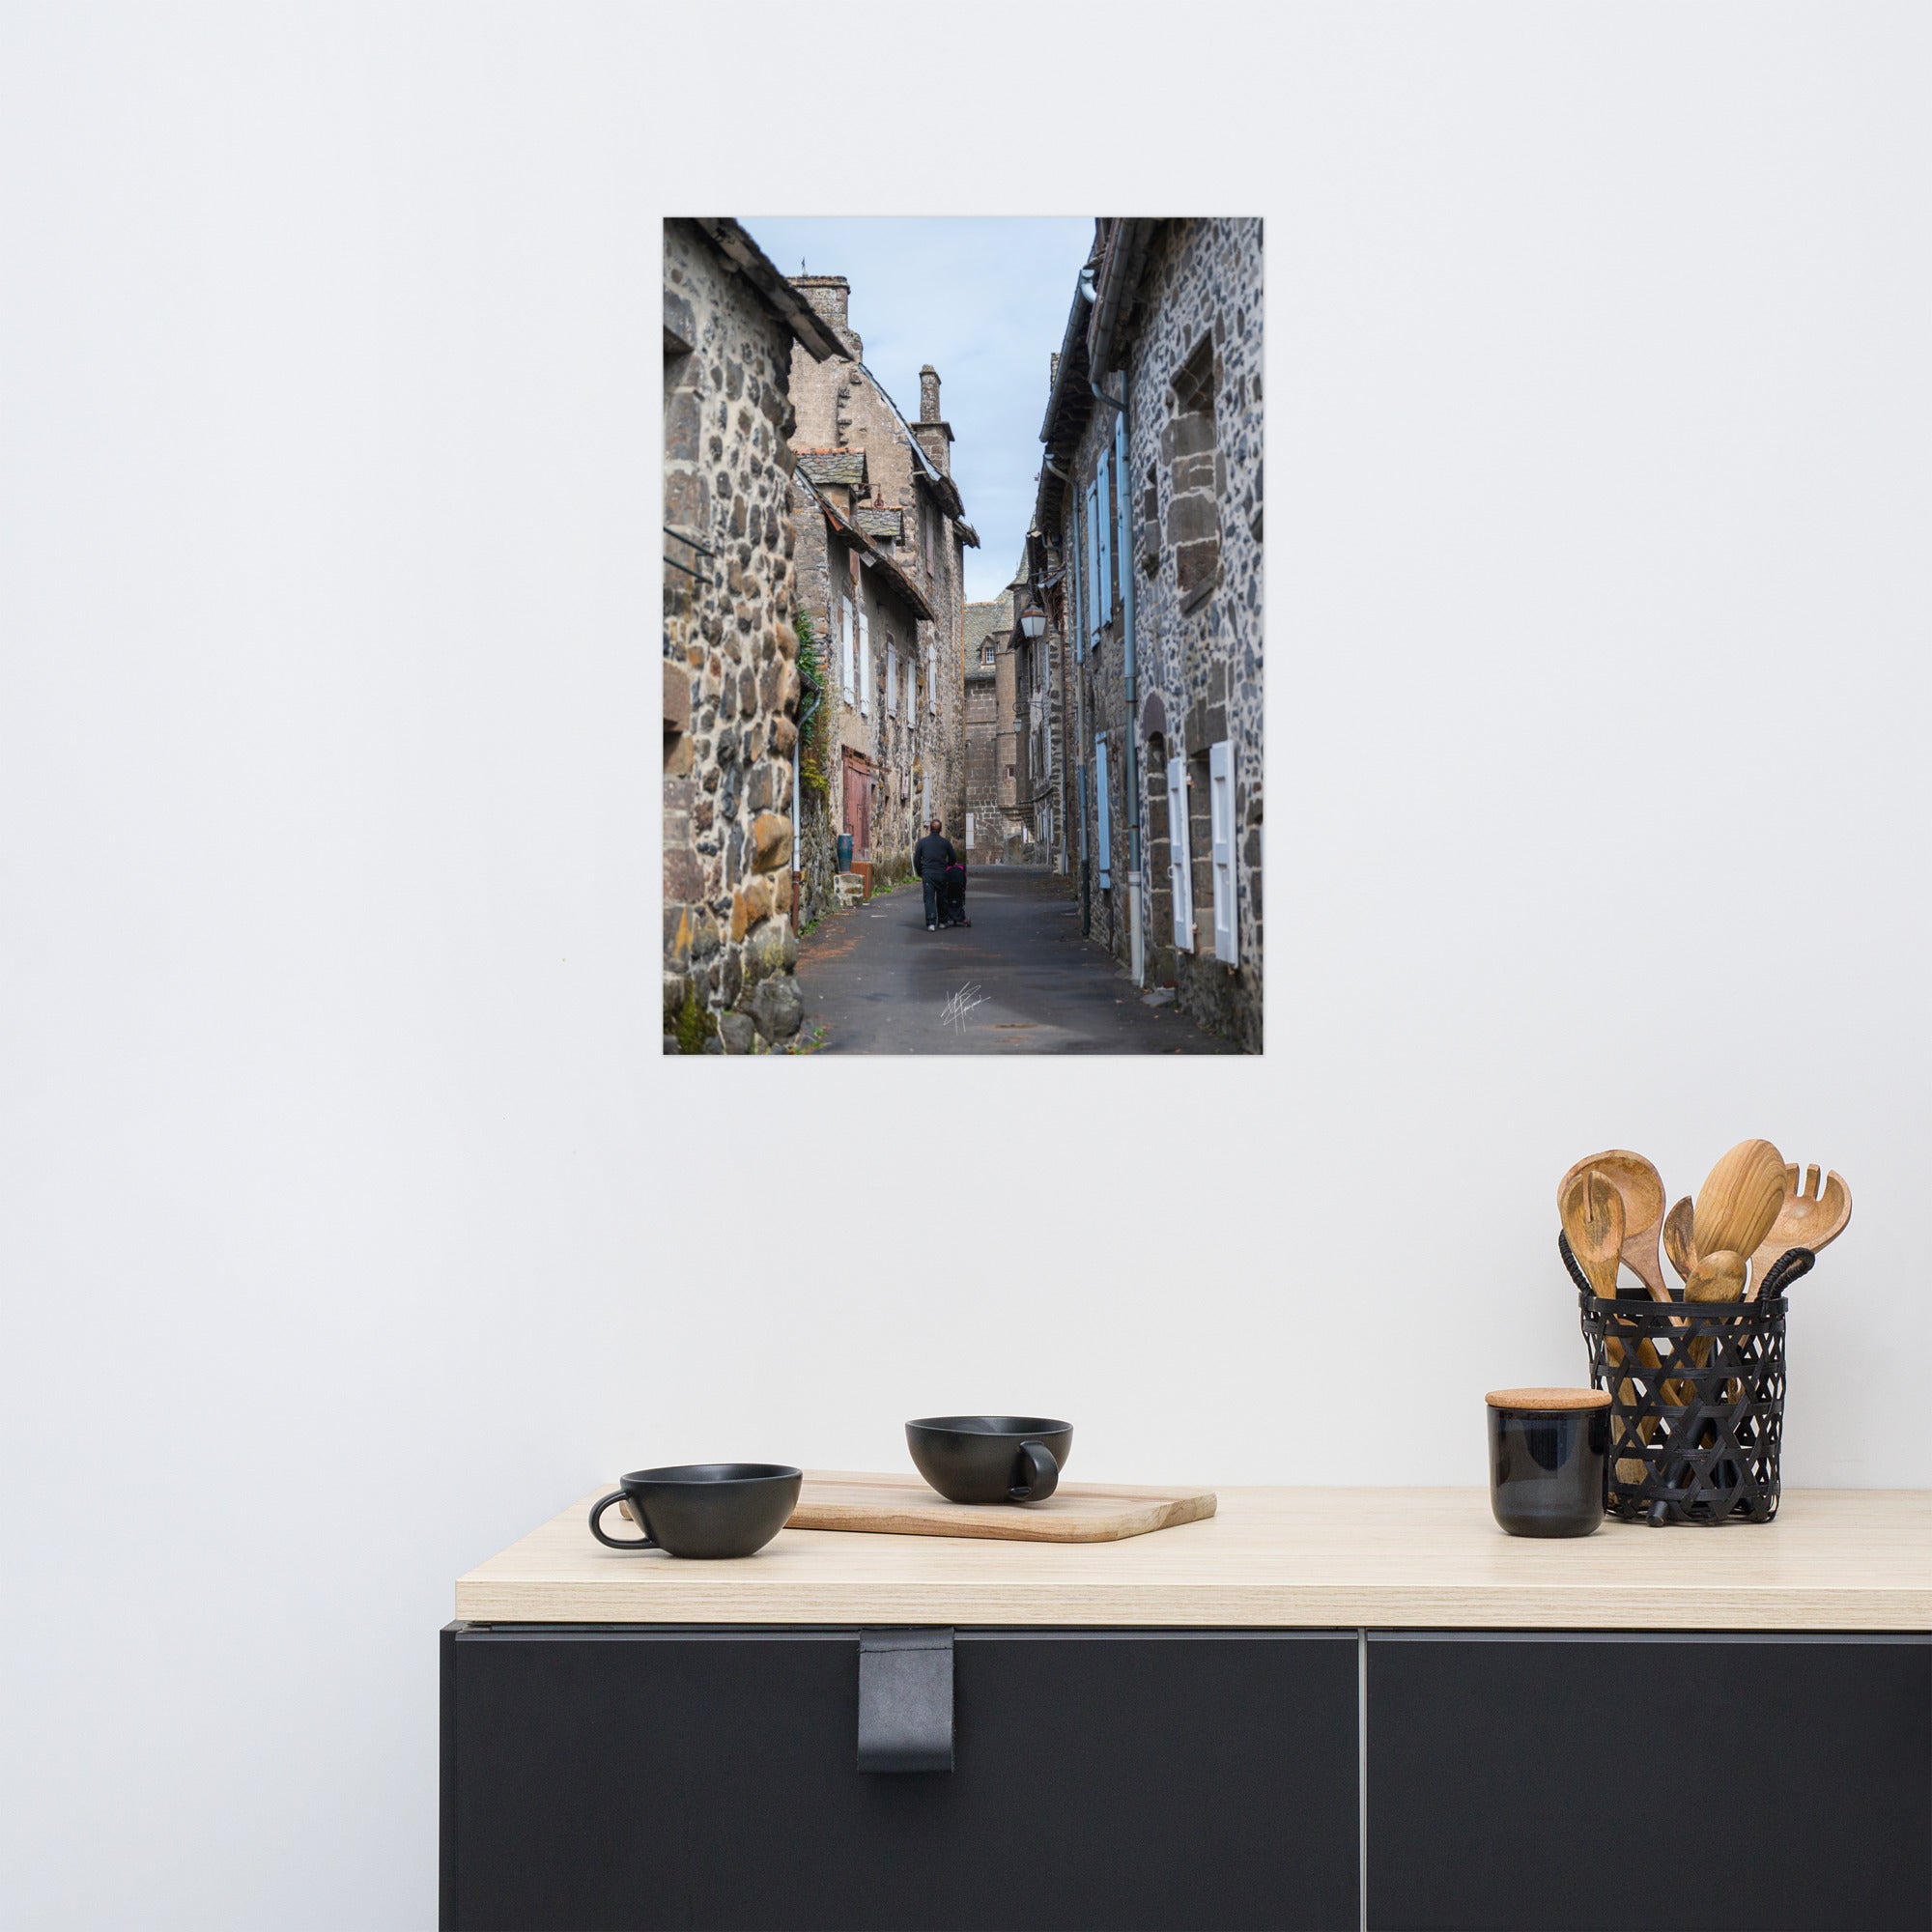 Photographie de la "Rue des Nobles" à Salers, illustrant le patrimoine médiéval de la ville.